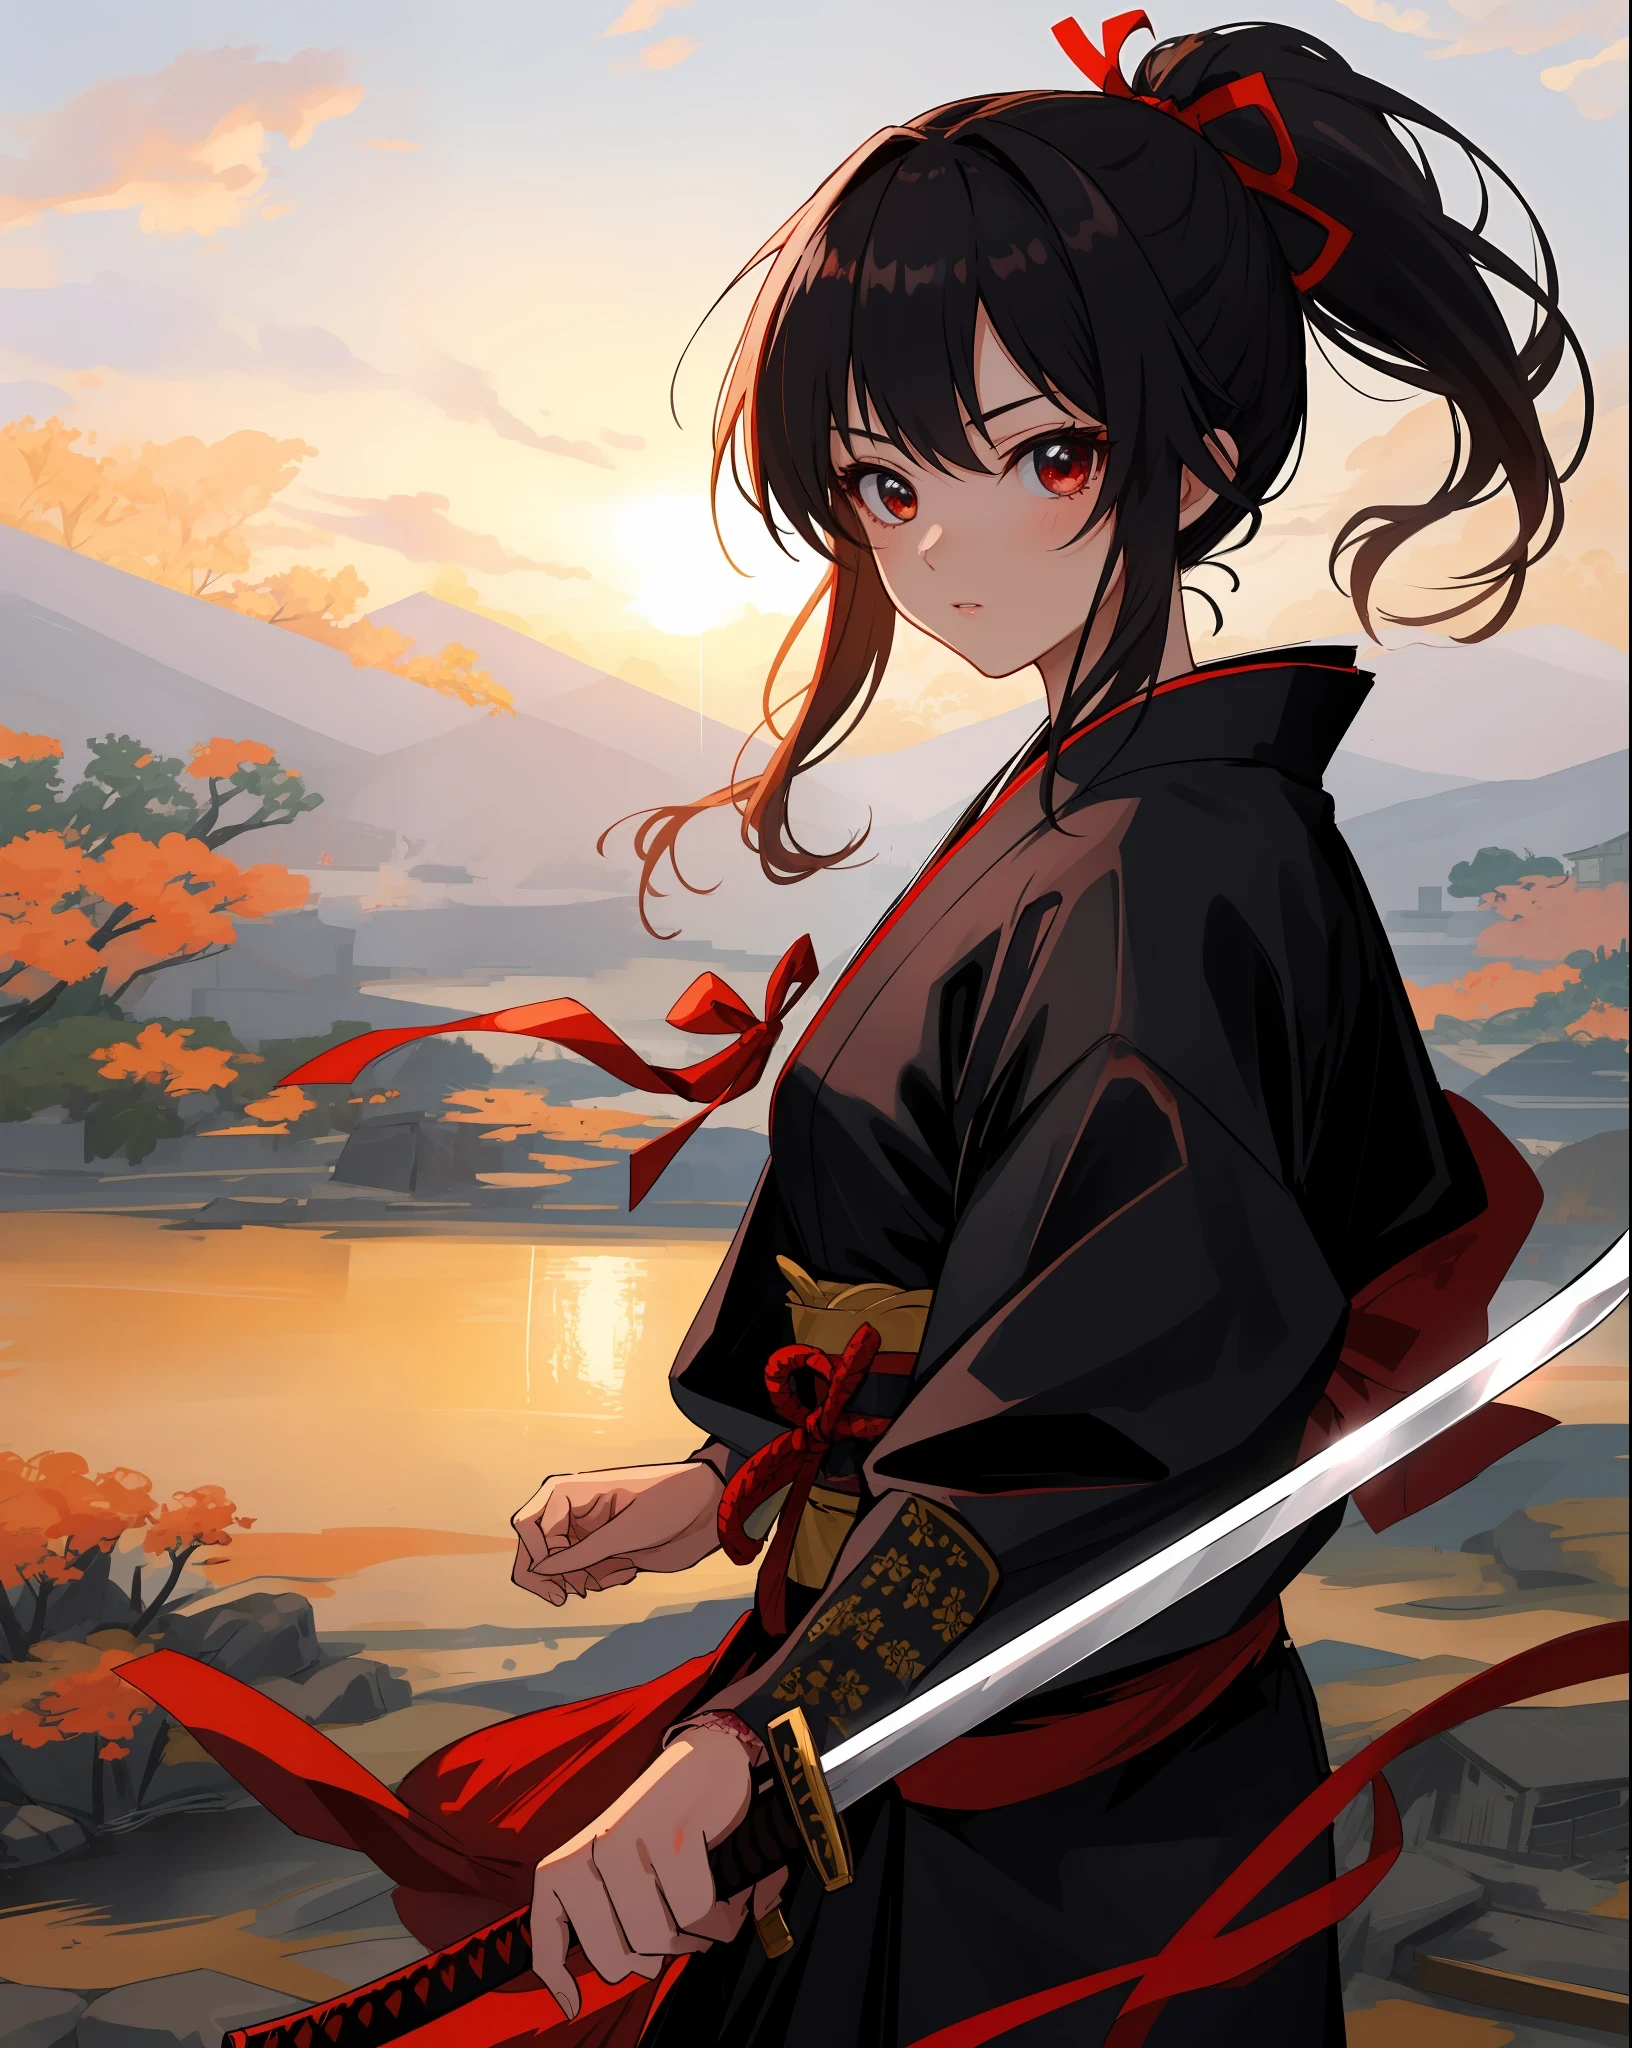 杰作, 超高品质, 超级细节, 完美绘画, 独自的, 美丽的女孩, 持剑的武士, 黑色马尾辫, 头发上扎着大红丝带, 配备两把日本刀, 愤怒.